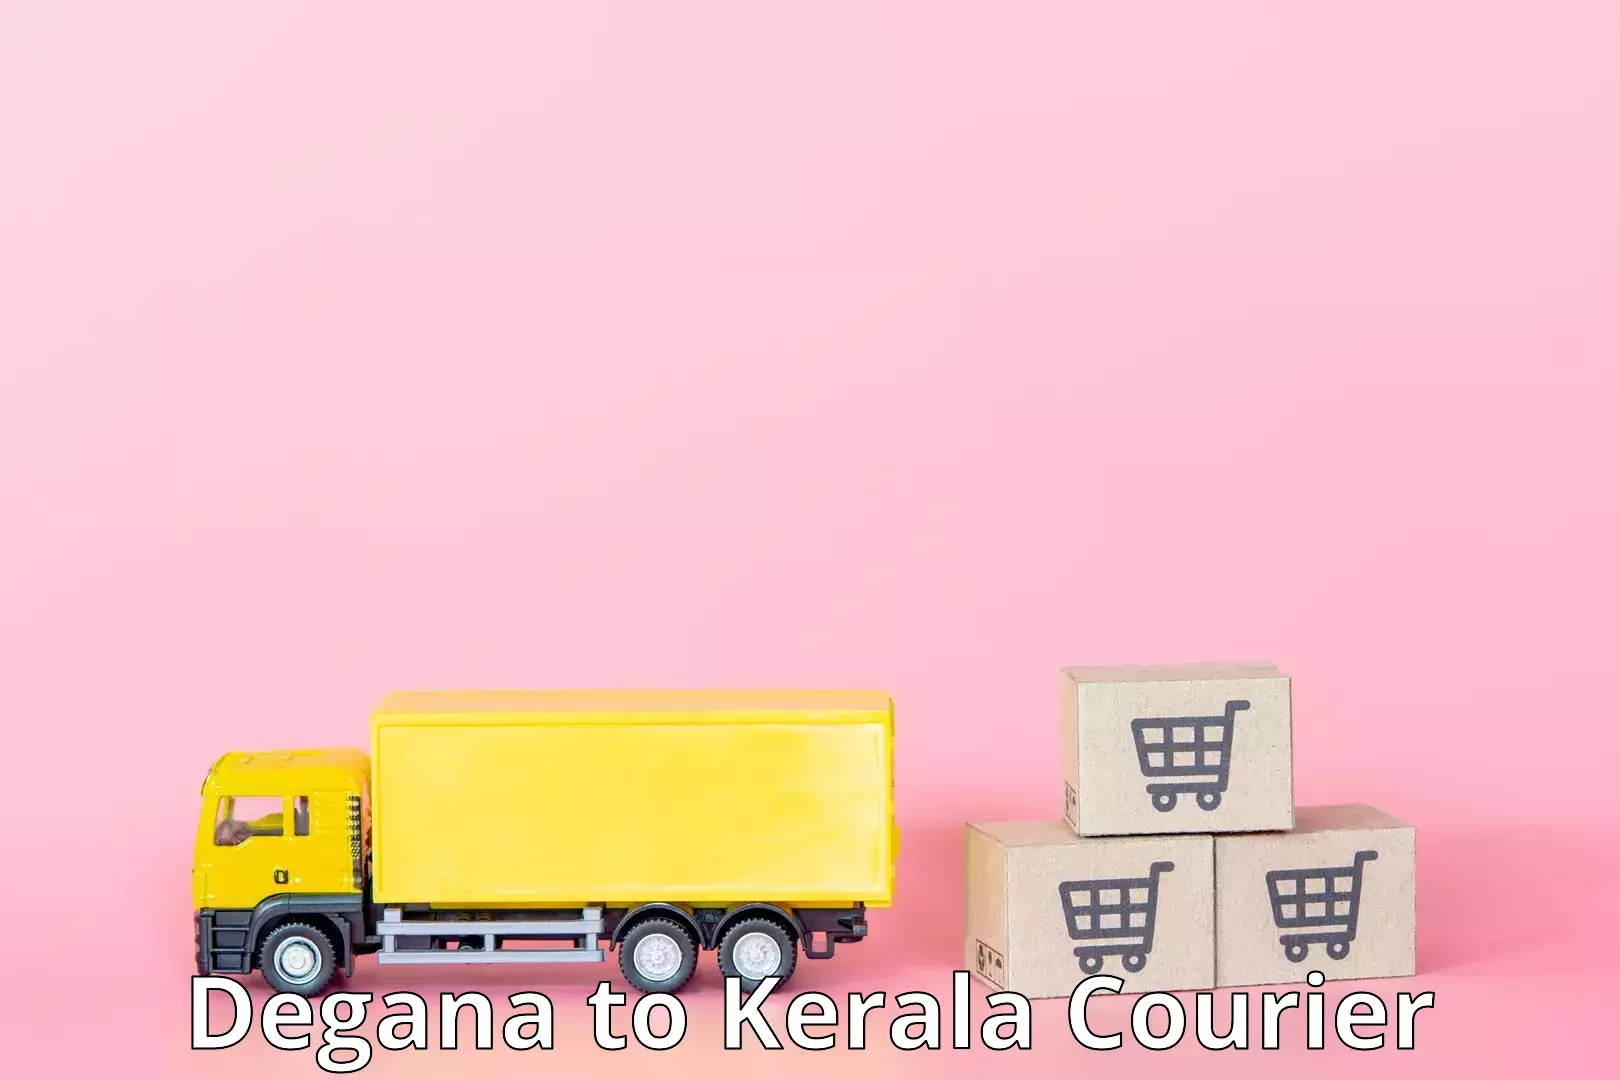 Enhanced shipping experience in Degana to Kerala